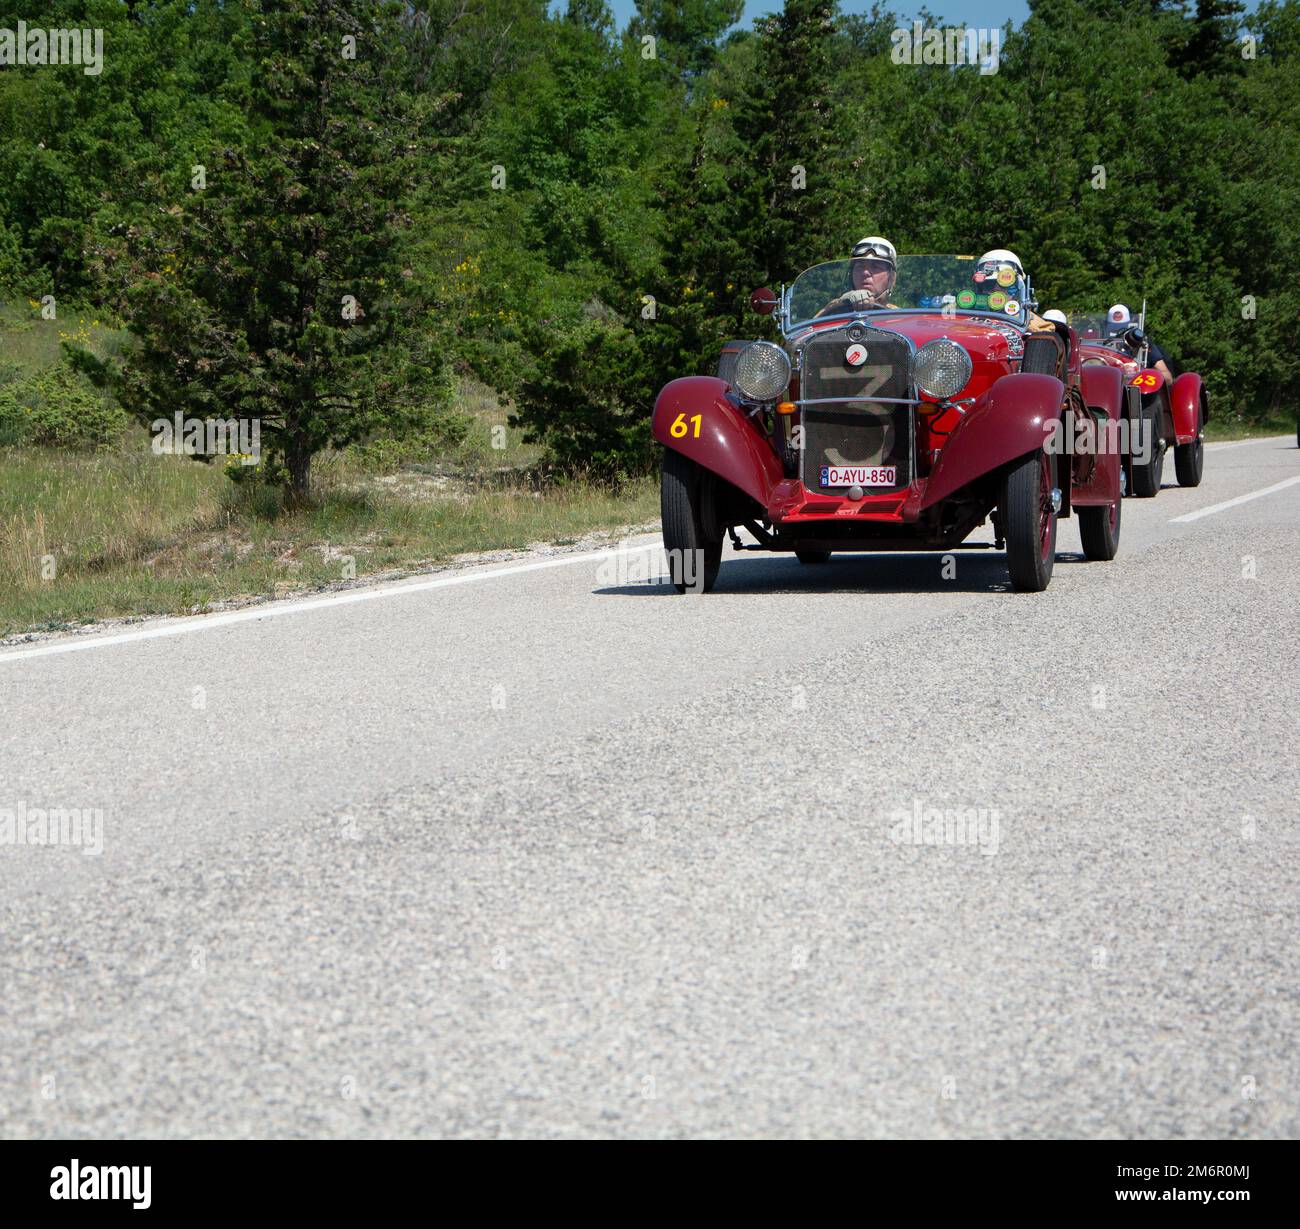 Fiat su una vecchia auto da corsa nel rally Mille miglia 2022 la famosa corsa storica italiana (1927-1957 Foto Stock